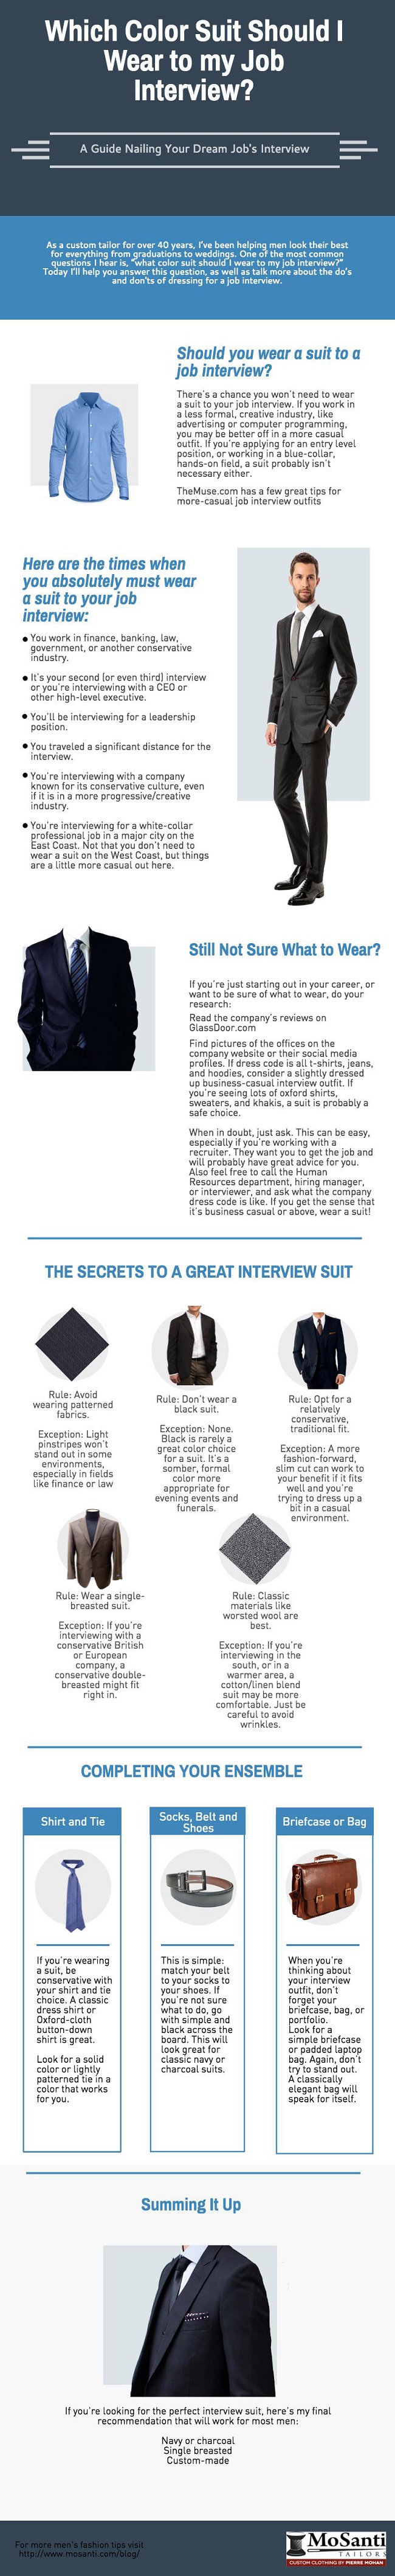 job interview suit color